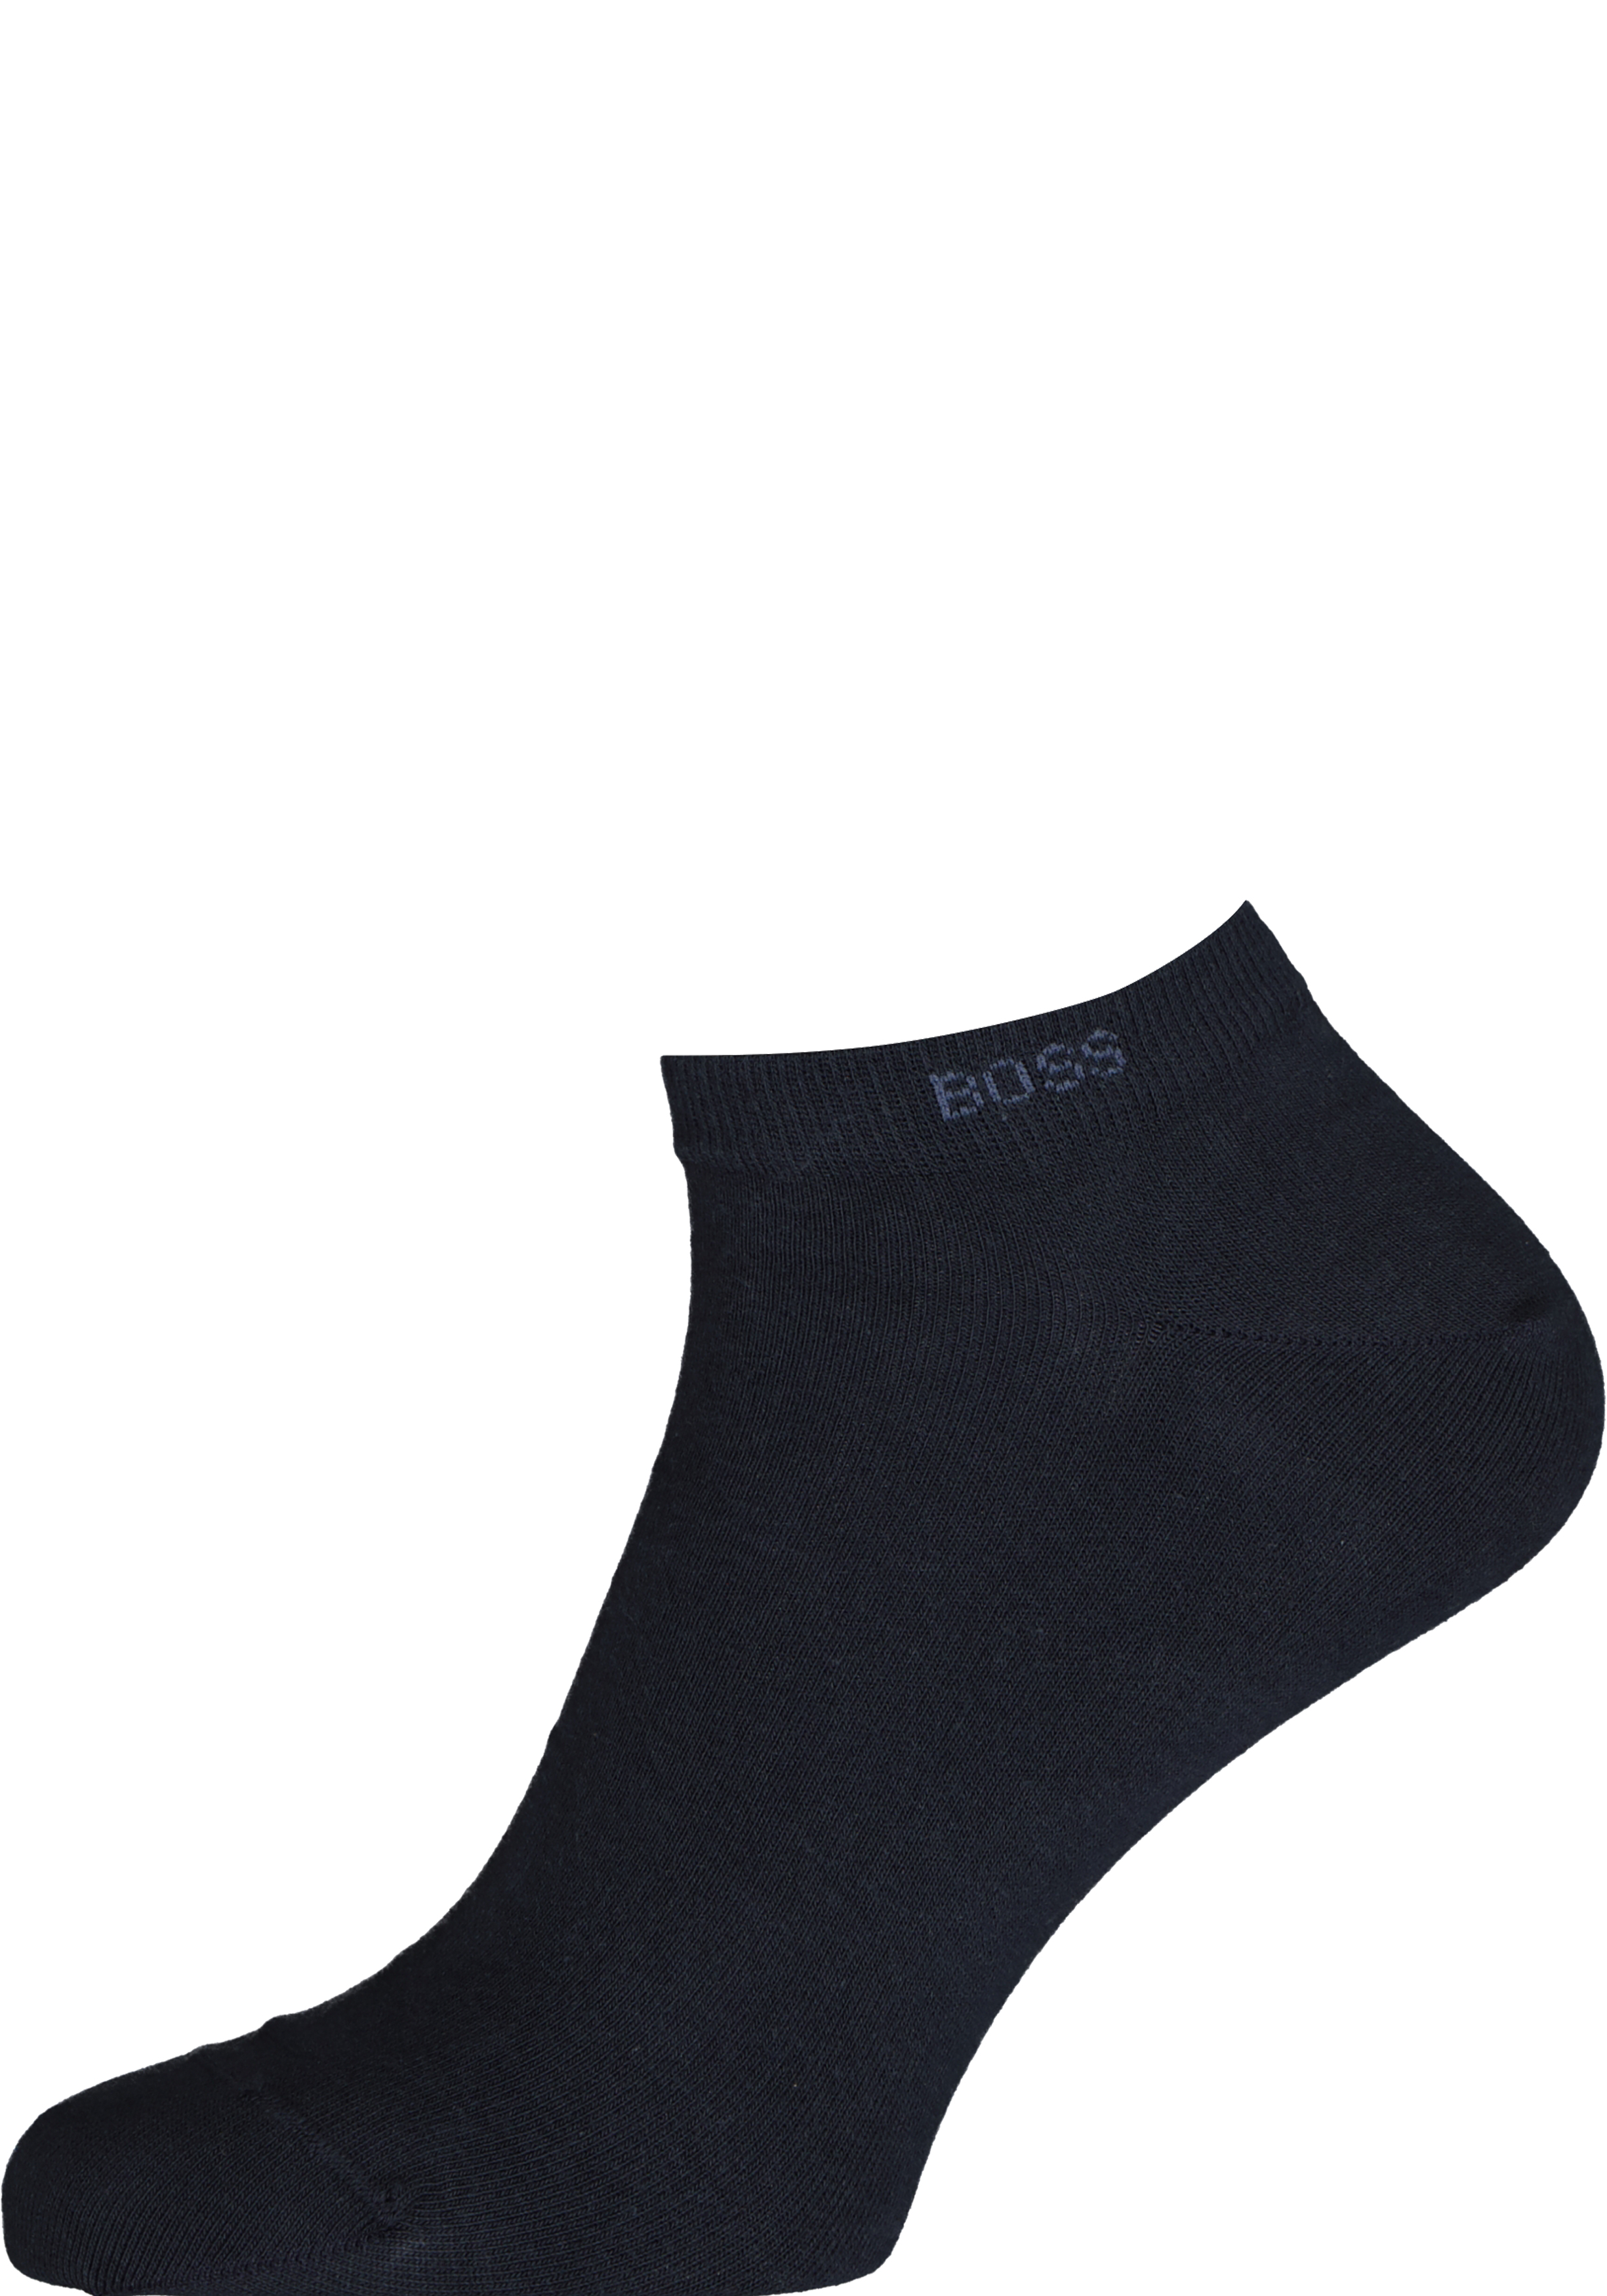 BOSS enkelsokken (2-pack), heren sneaker sokken katoen, donkerblauw